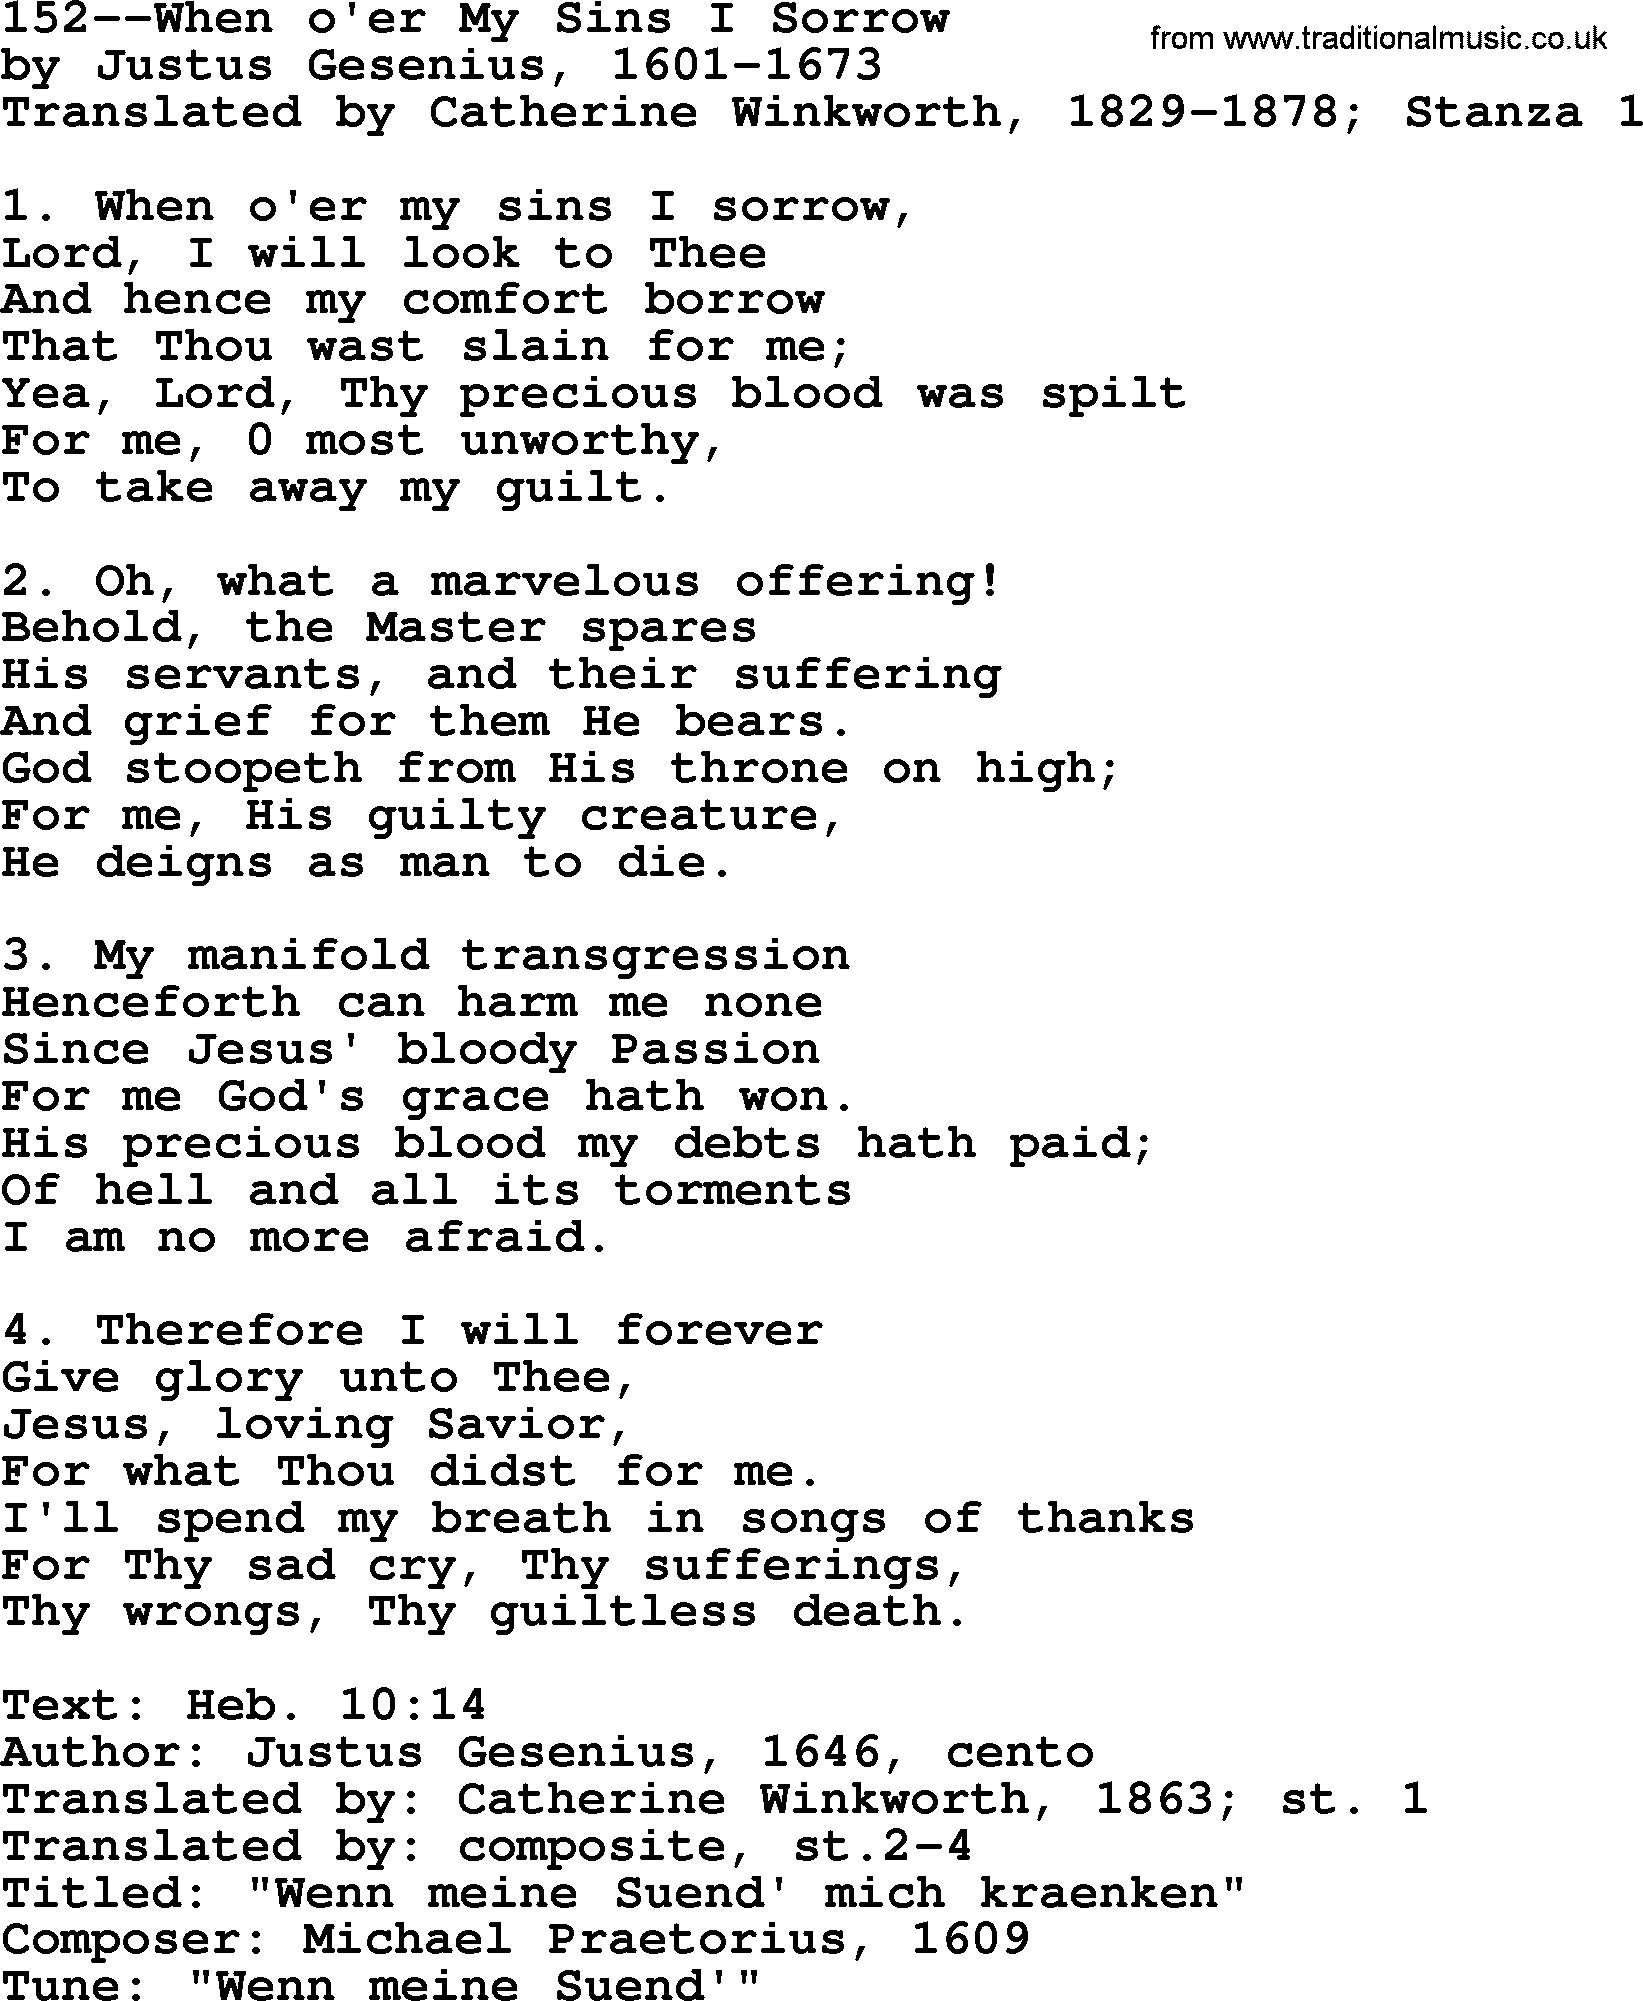 Lutheran Hymn: 152--When o'er My Sins I Sorrow.txt lyrics with PDF